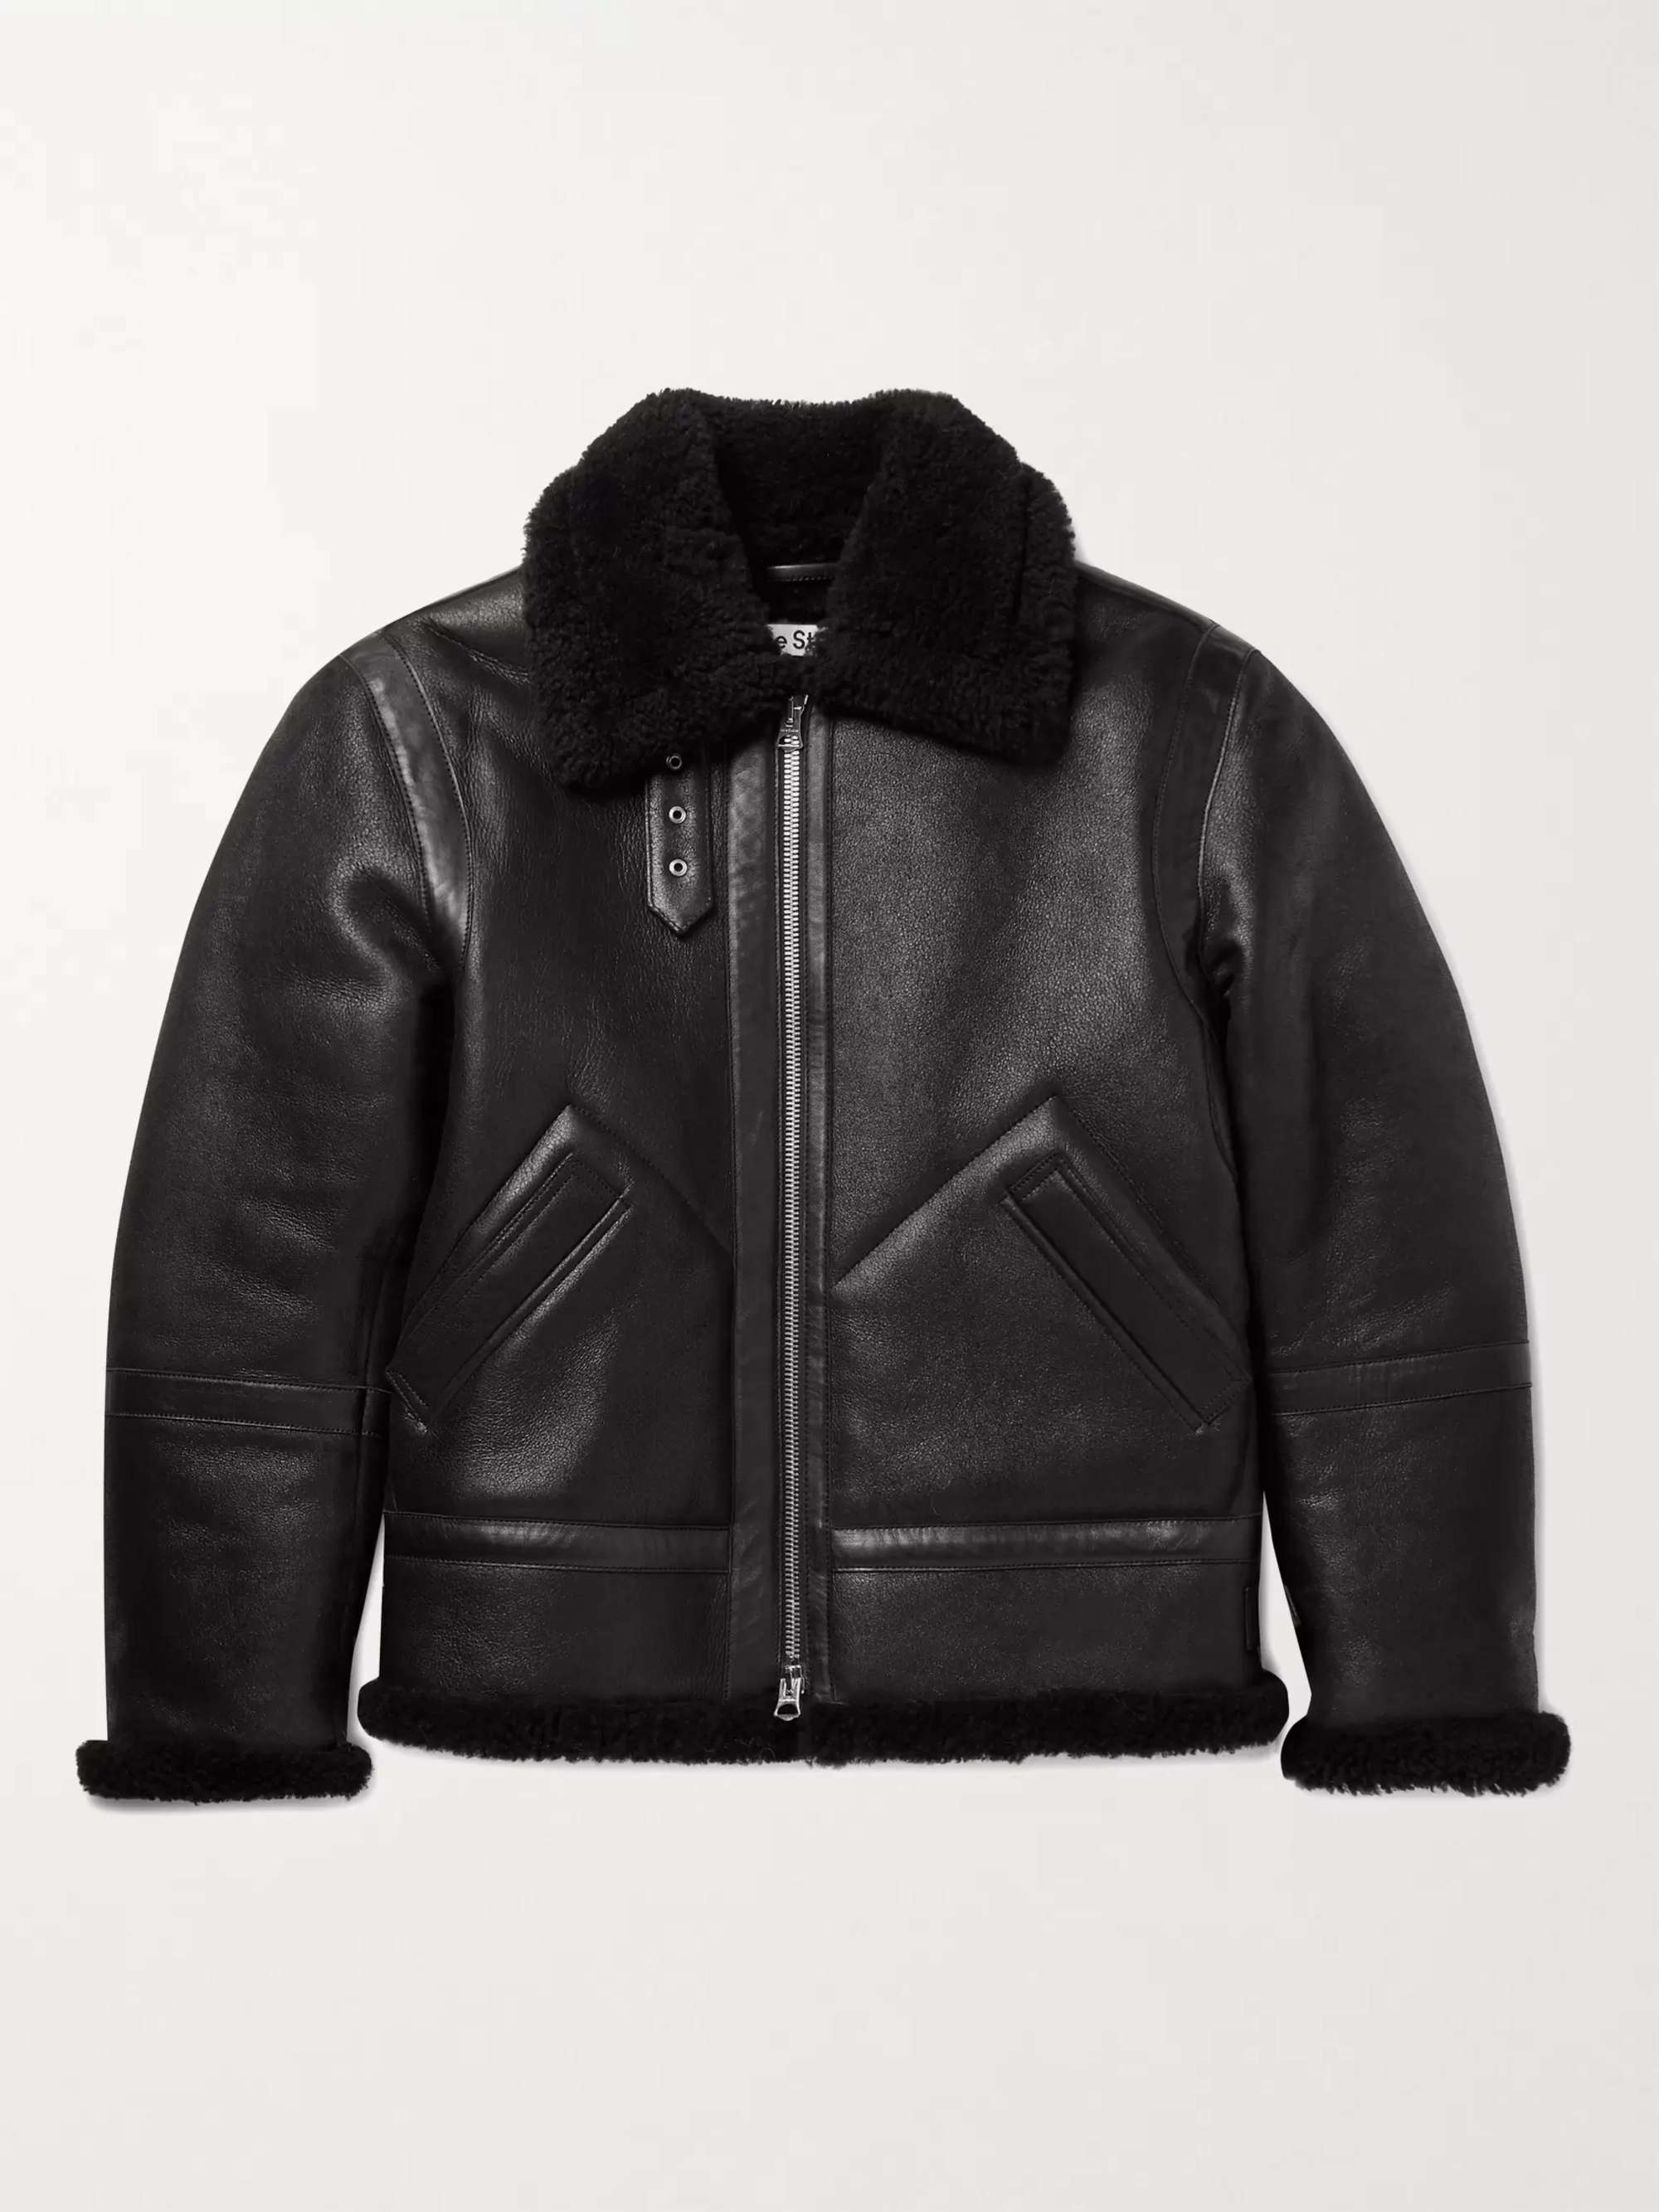 ACNE STUDIOS Shearling-Lined Full-Grain Leather Jacket for Men | MR PORTER